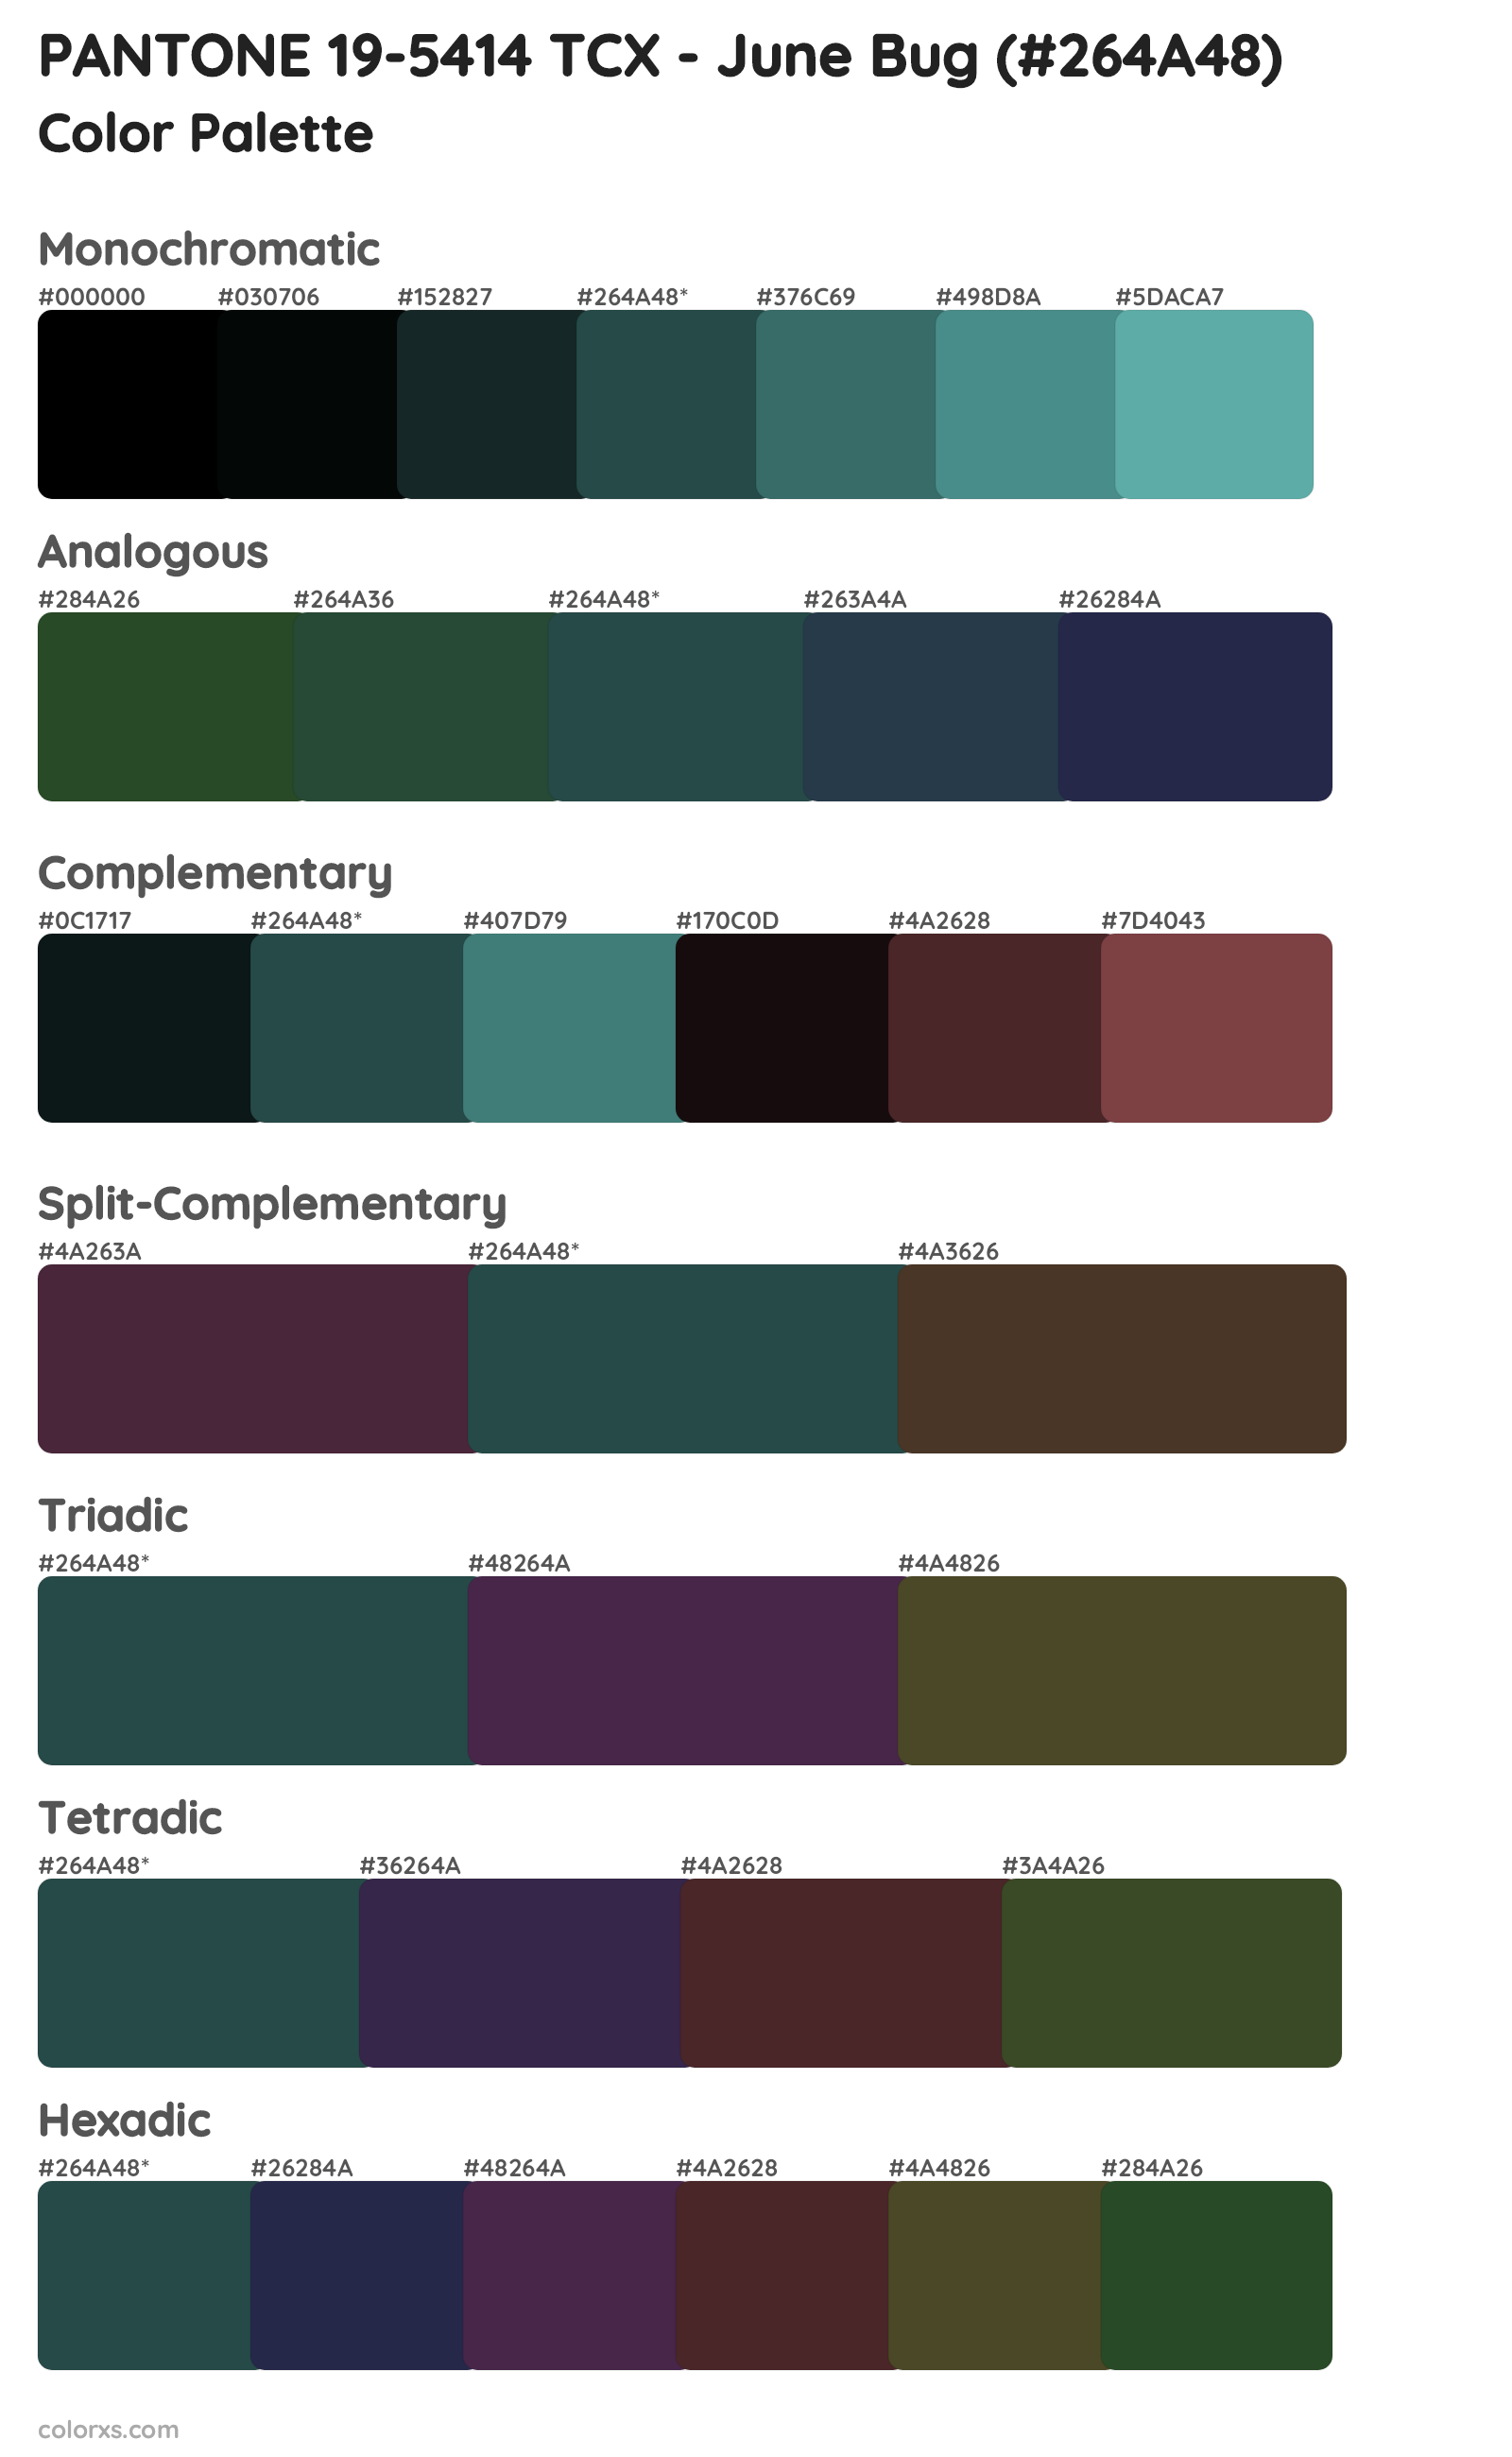 PANTONE 19-5414 TCX - June Bug Color Scheme Palettes